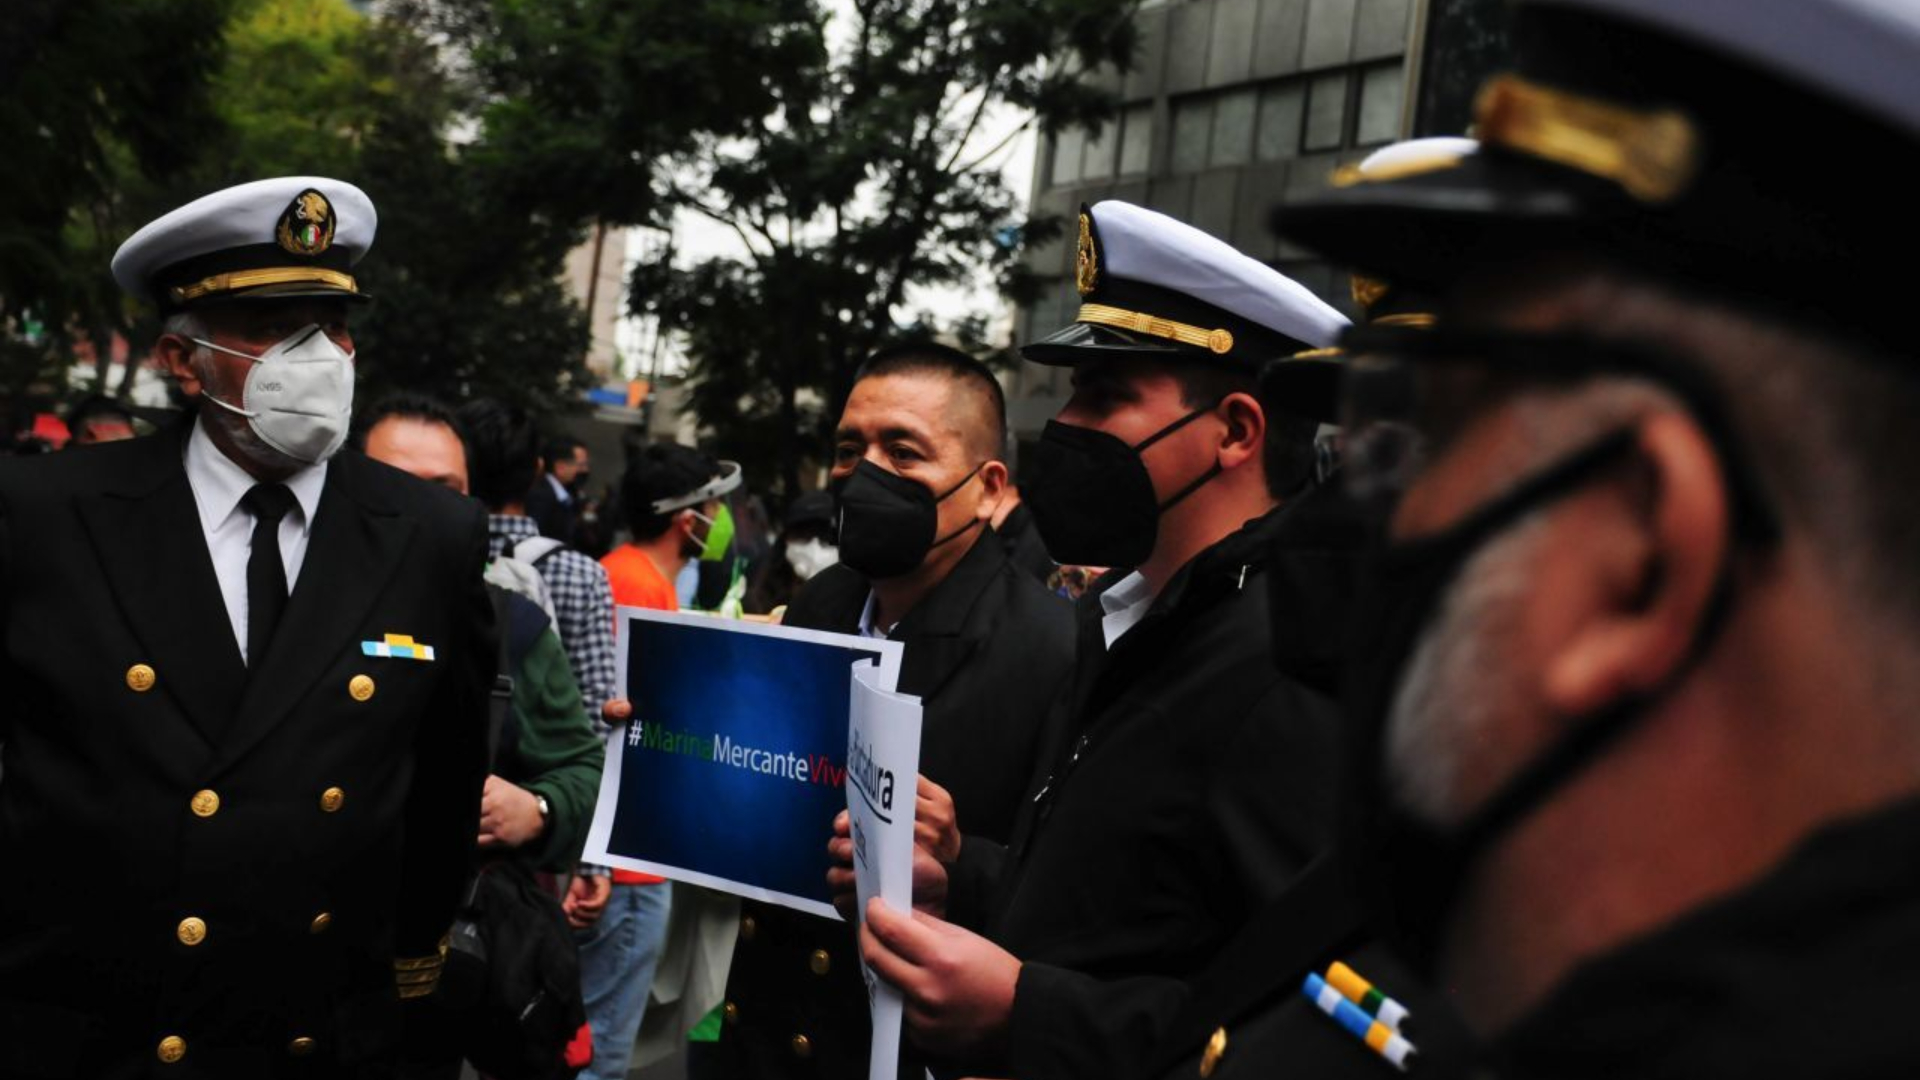 Los manifestantes de la marina mercante consiguieron el Parlamento Abierto en el Senado que habían pedido el martes (Foto: Cuartoscuro)